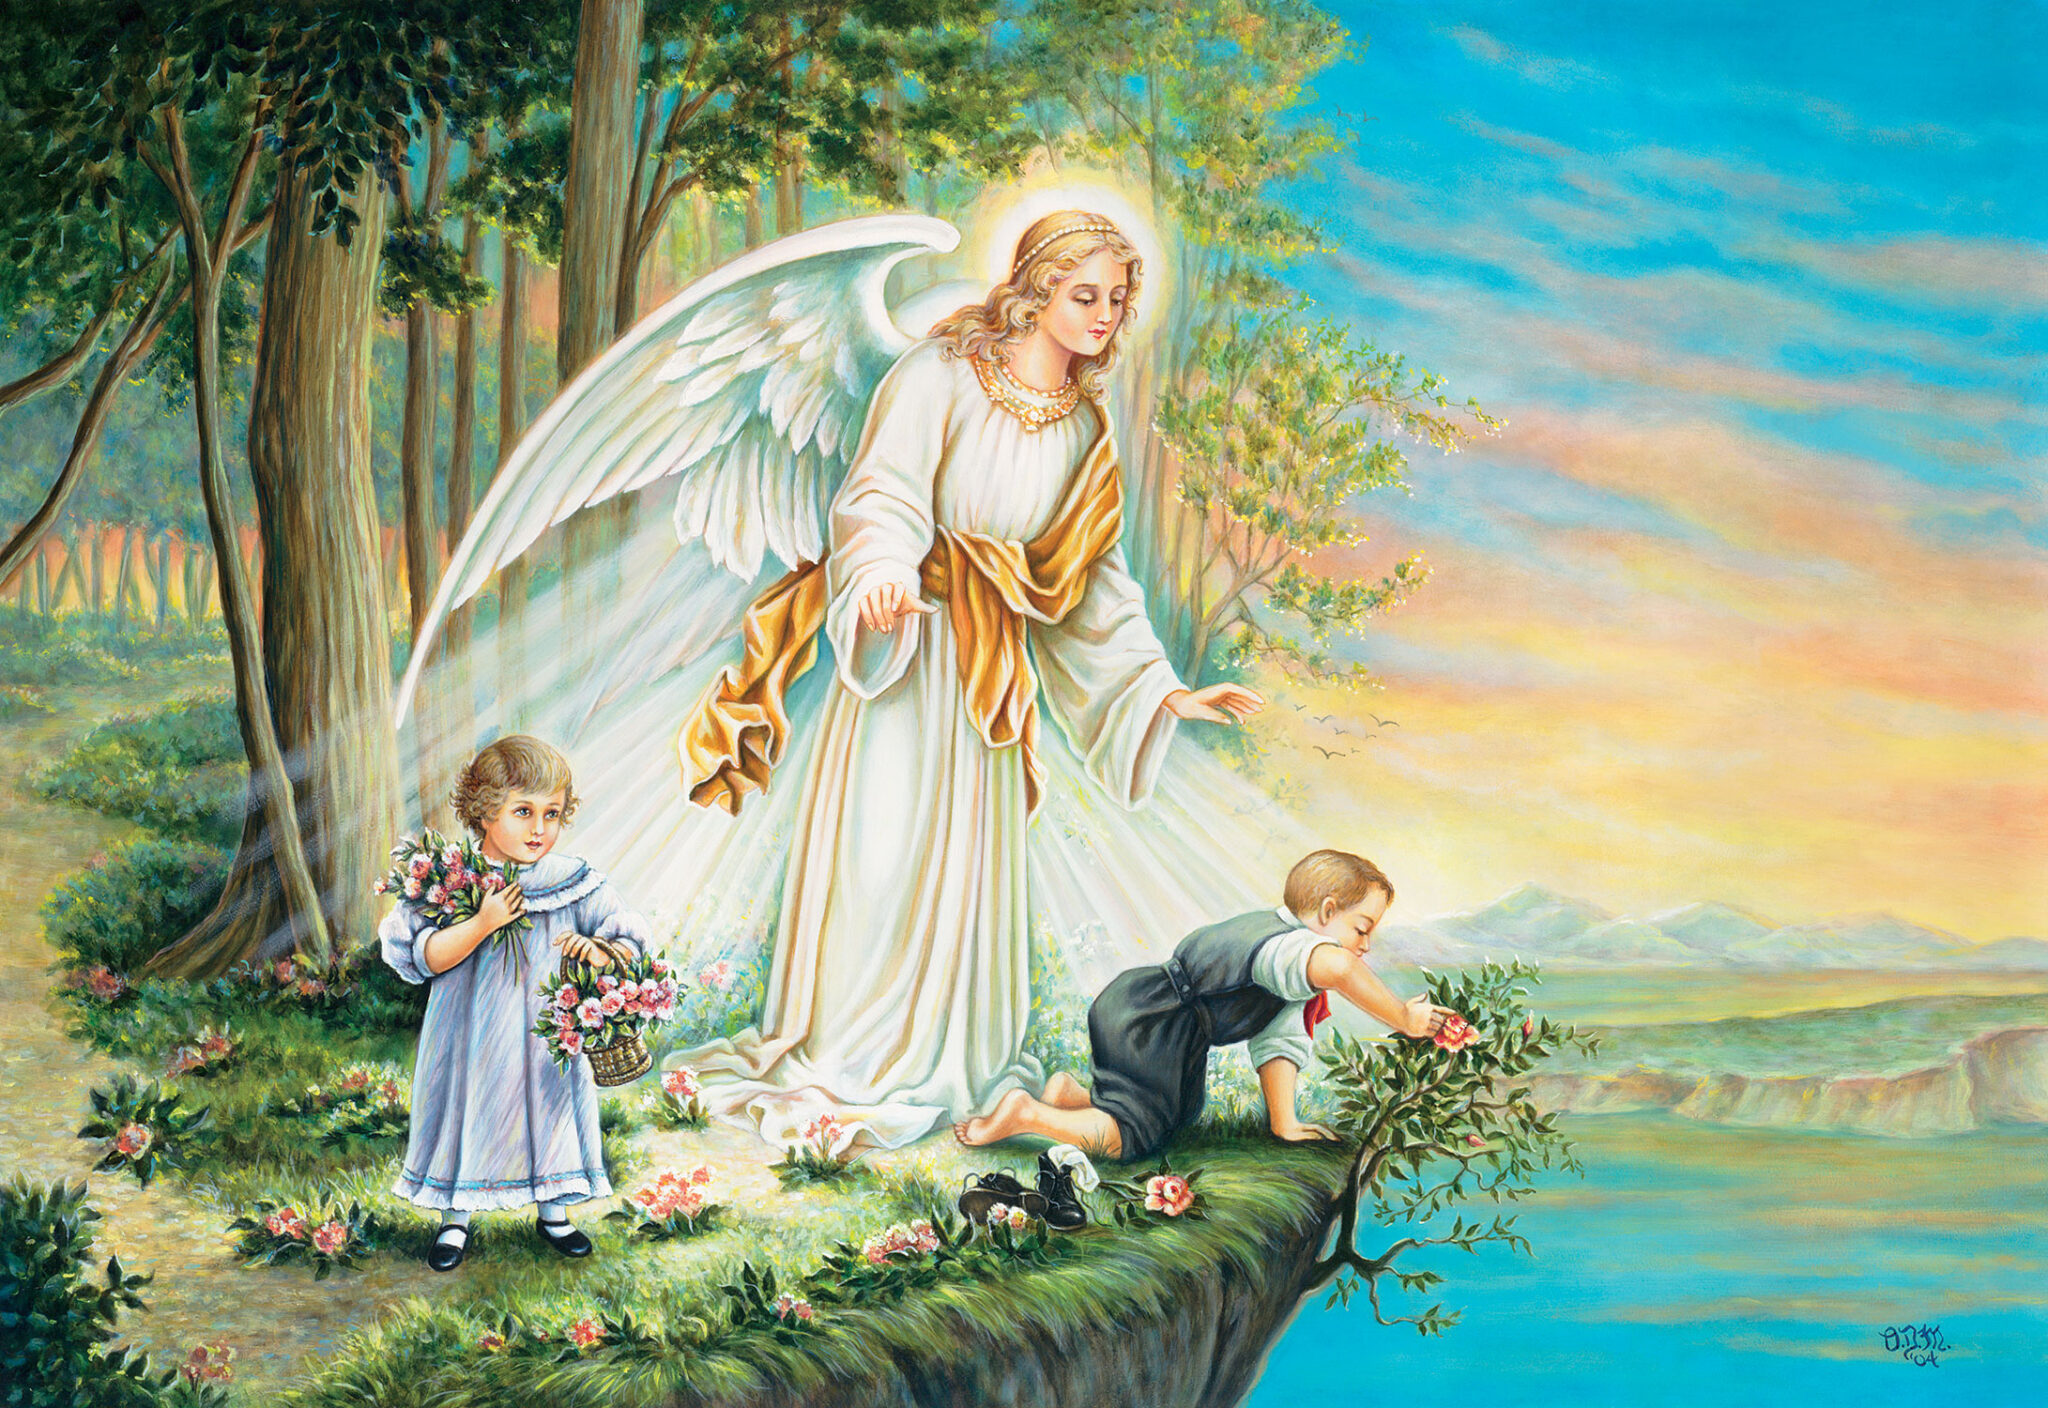 Ангель. Бернард Плокгорст ангел хранитель. Ангел хранитель шиппер. Ангел хранитель и дети. Ангел хранитель картина.